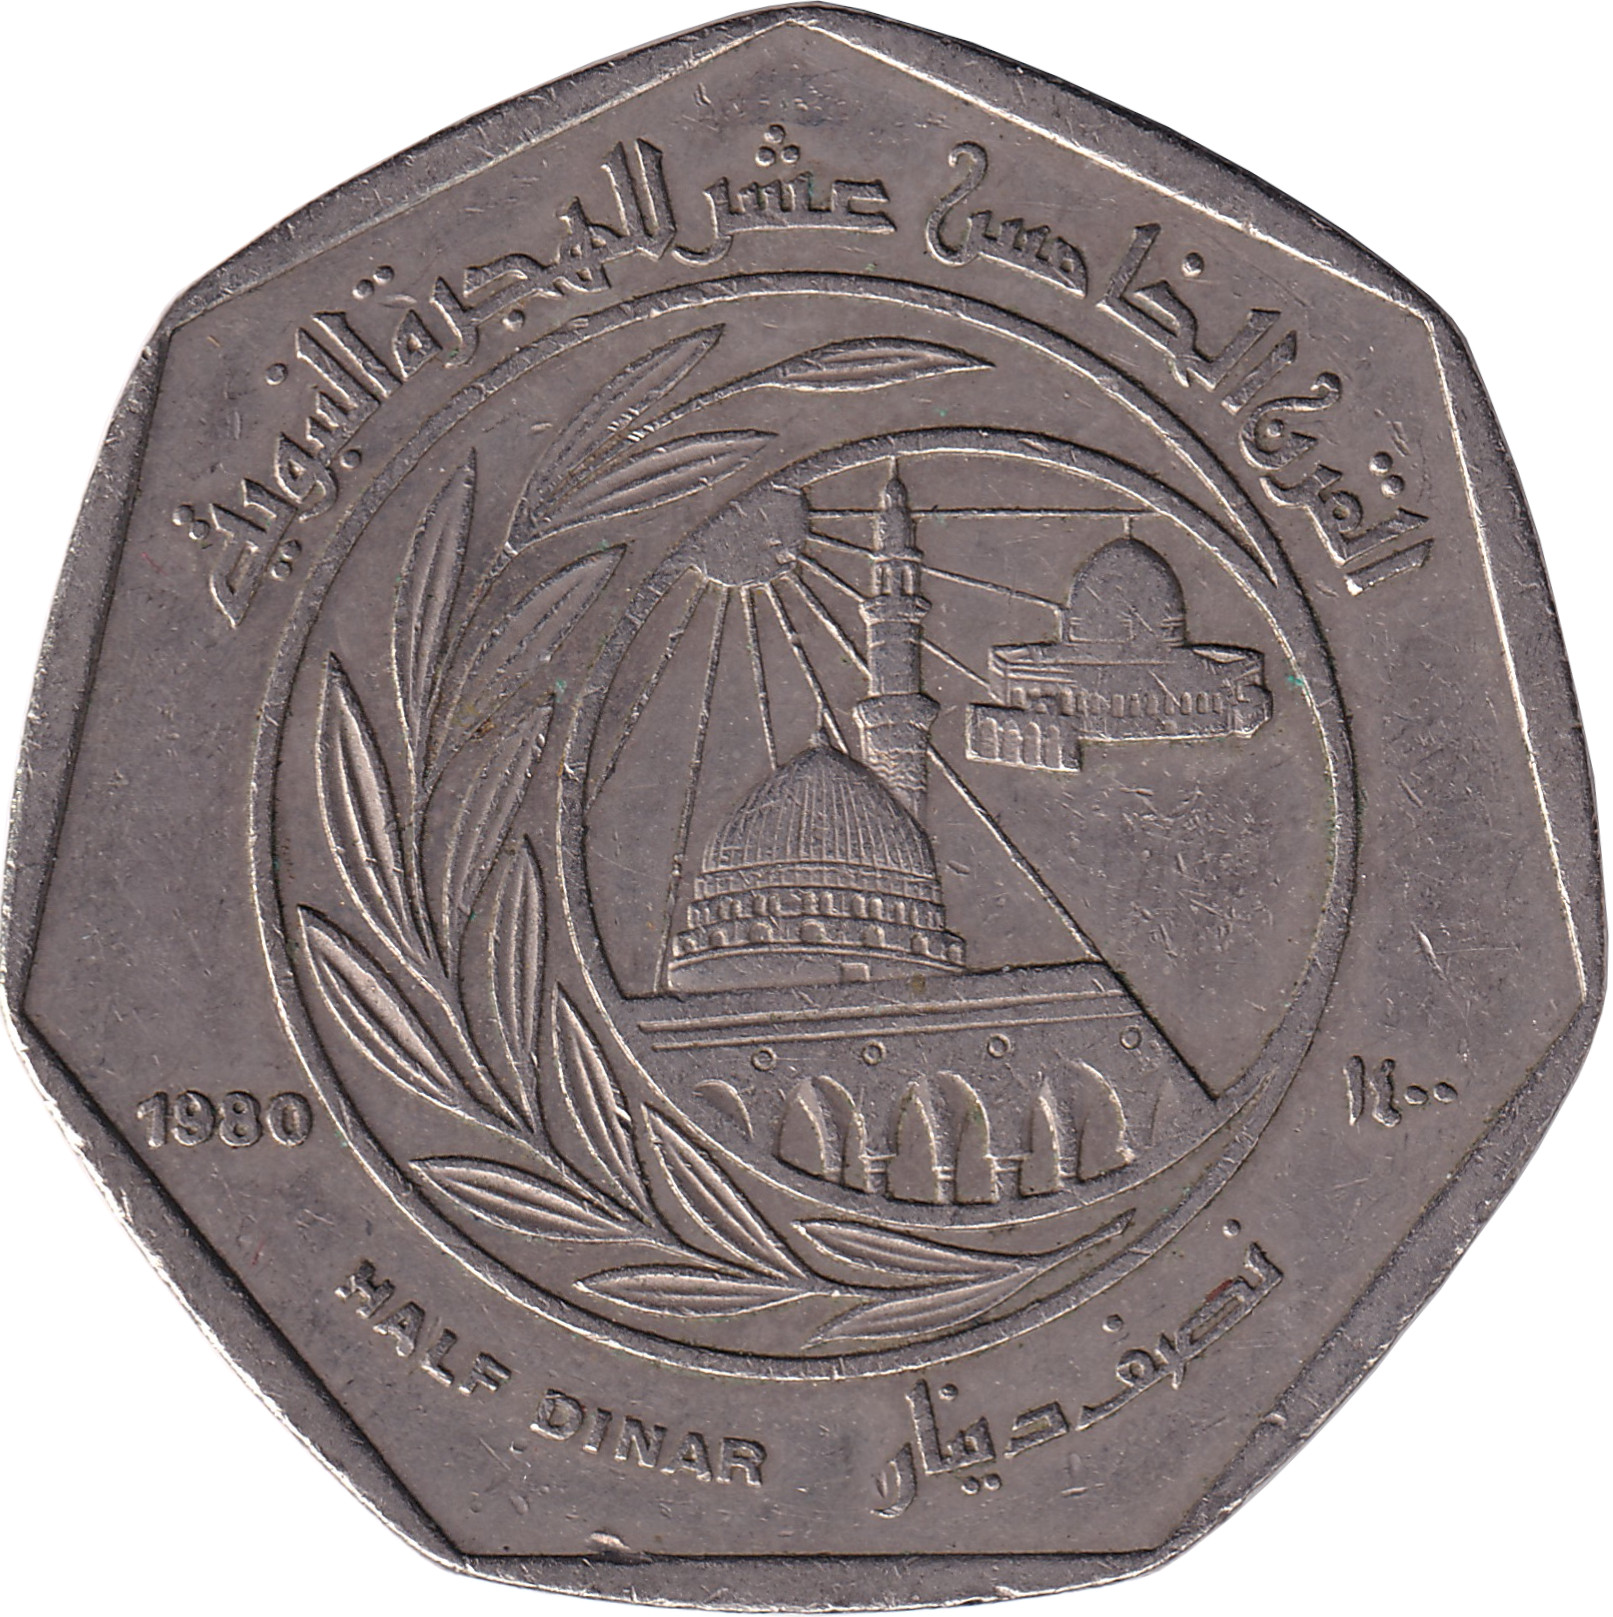 1/2 dinar - 1400 years de l'Hégire